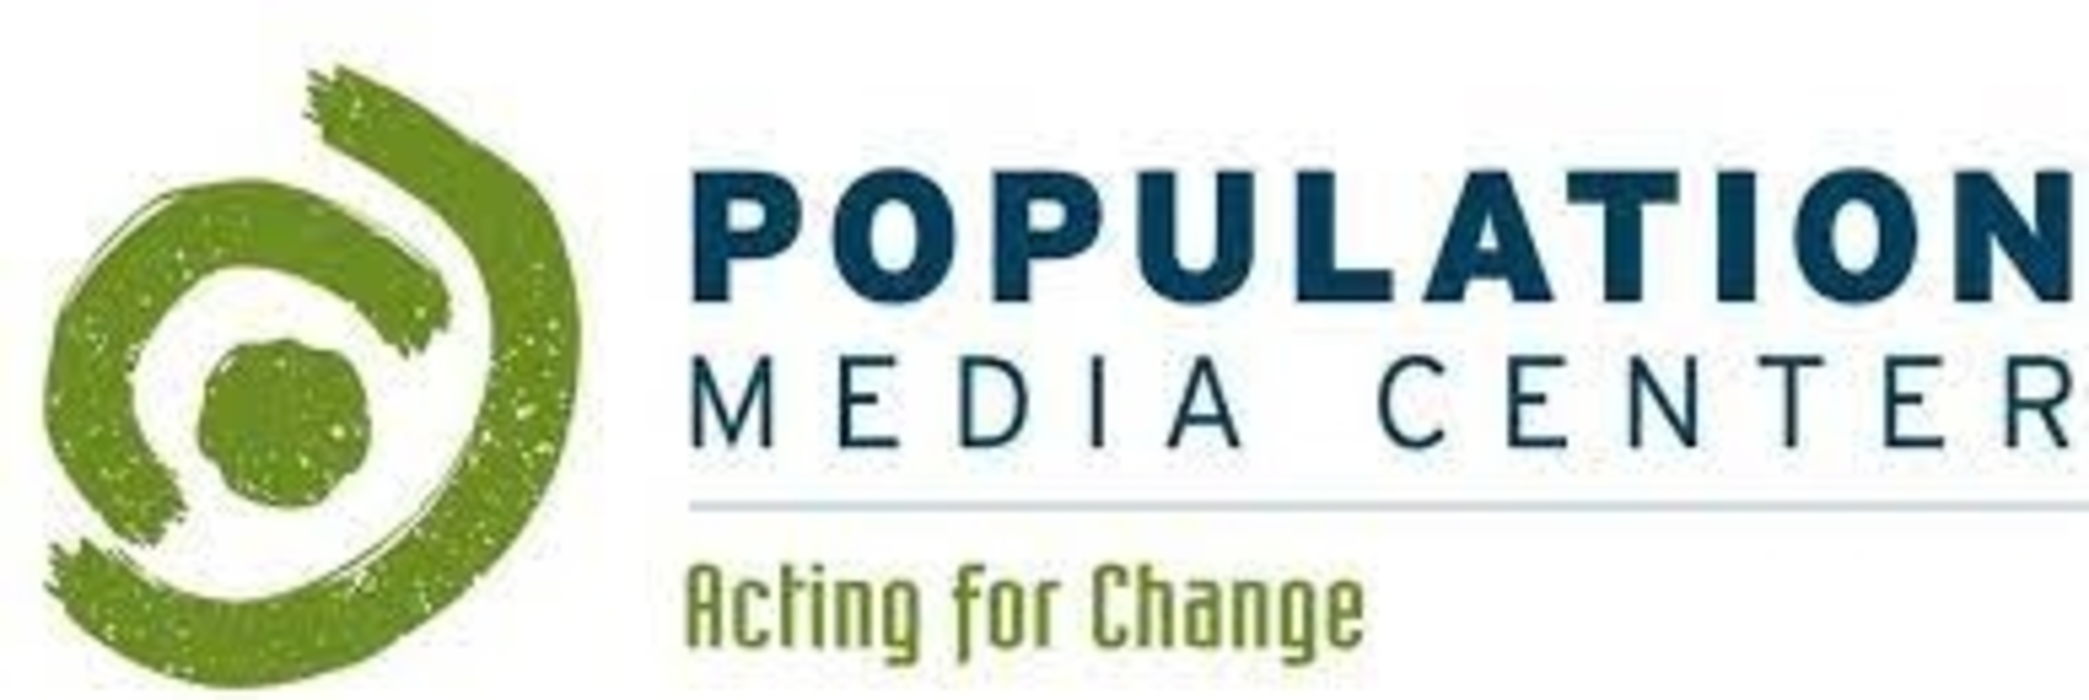 Population Media Center Uganda Jobs